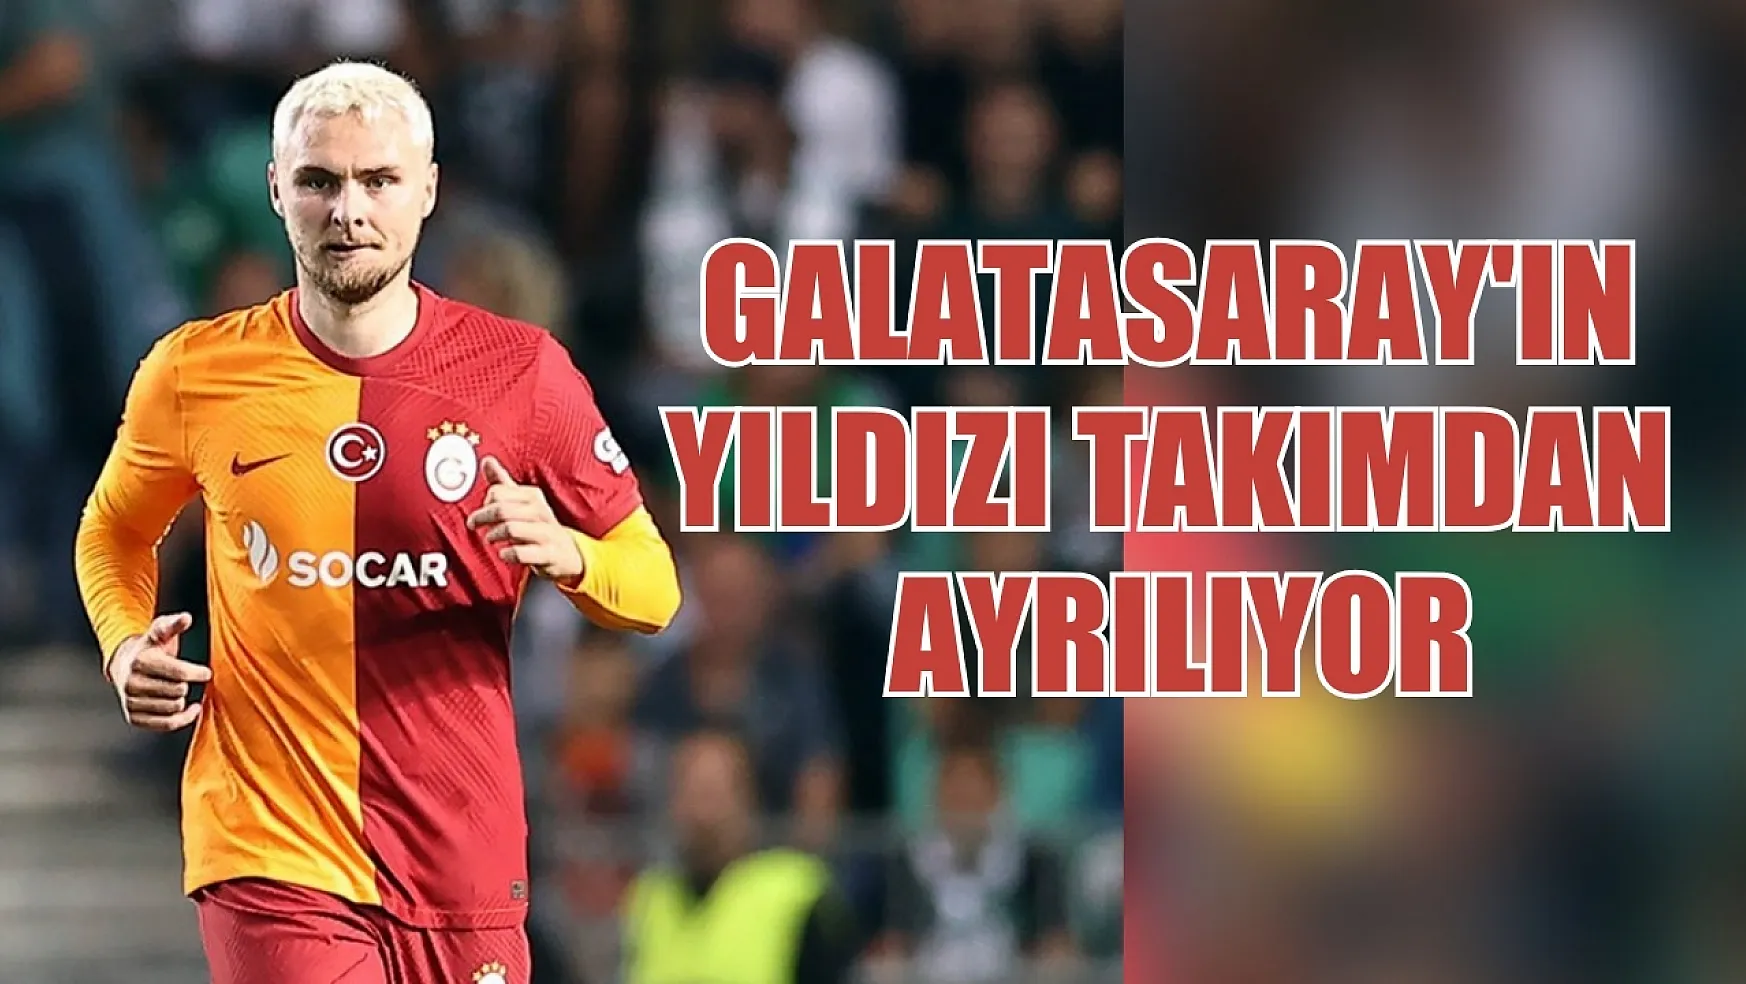 Galatasaray'ın yıldızı takımdan ayrılıyor